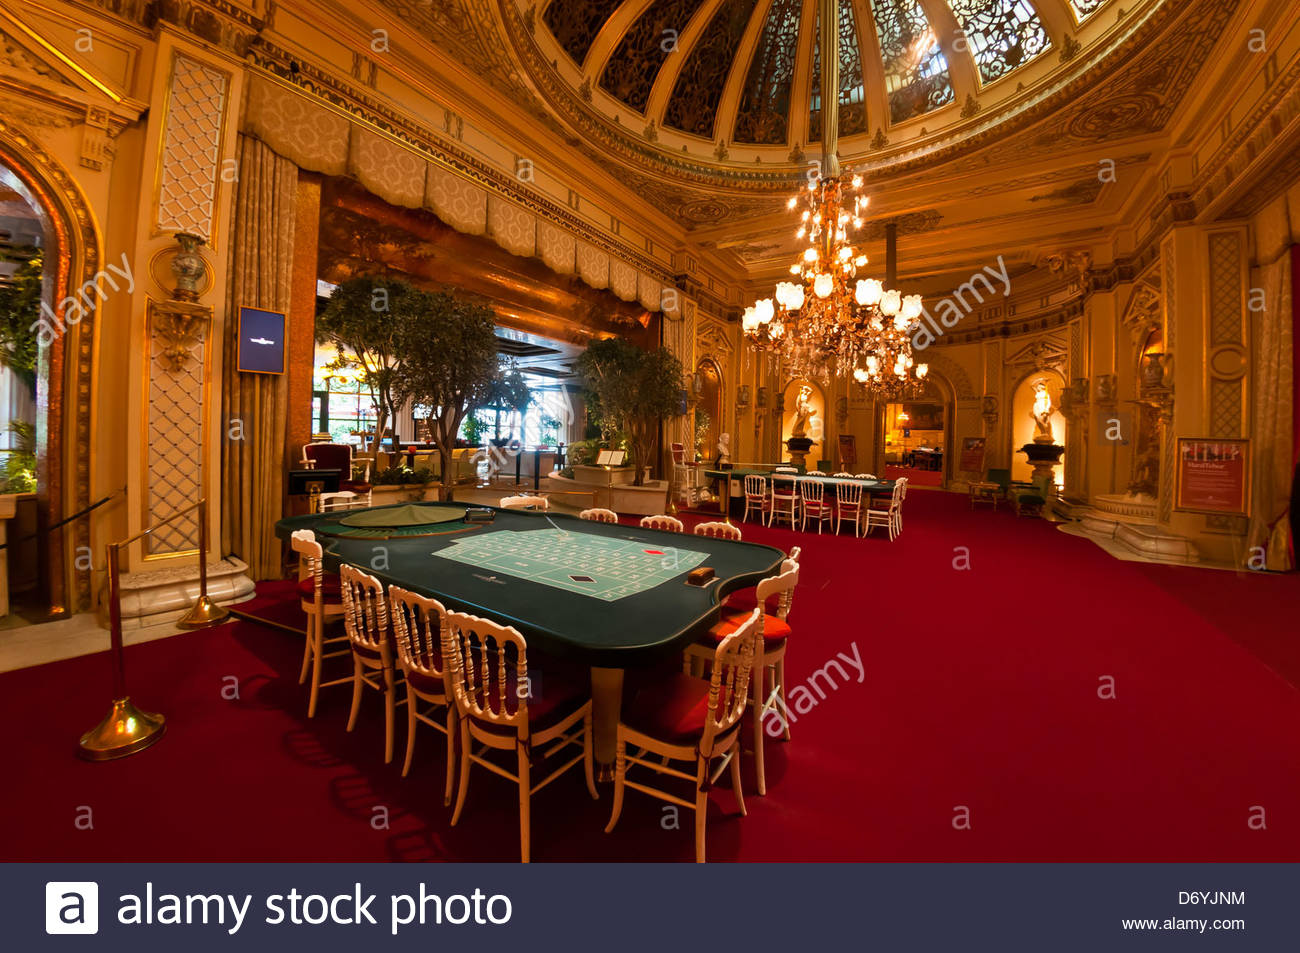 Tischlimit roulette casinos austria